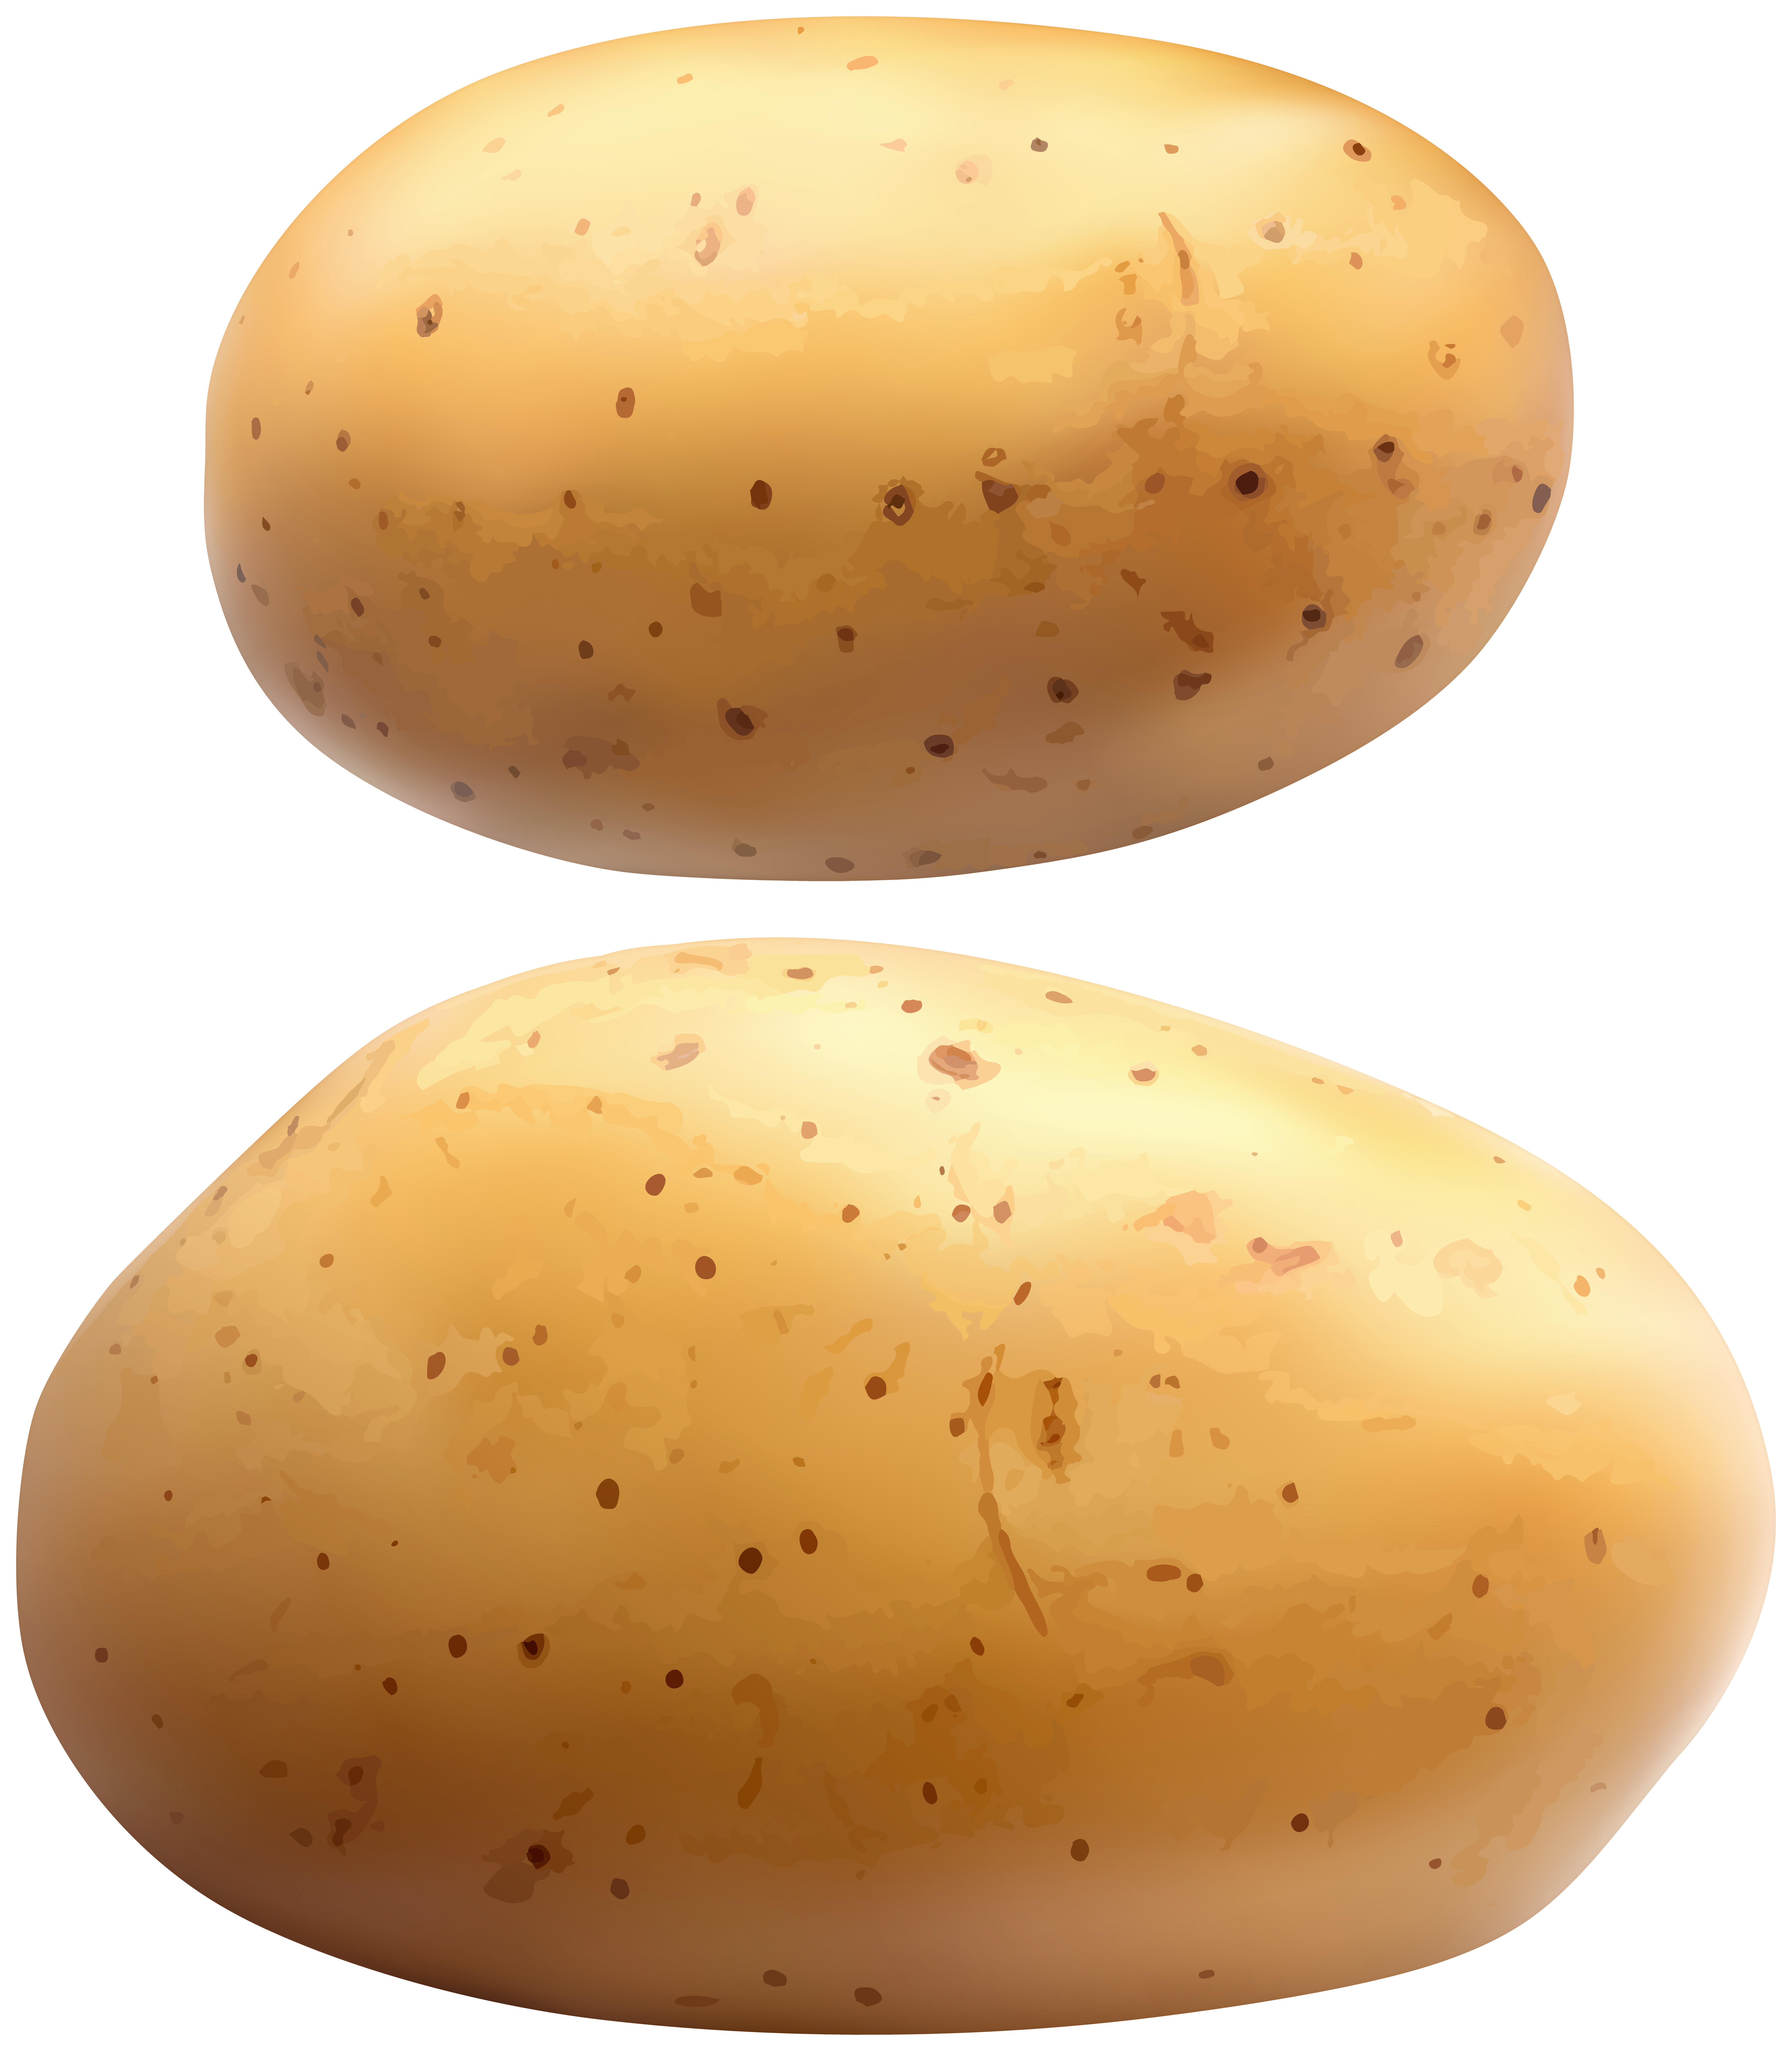 potato images clip art